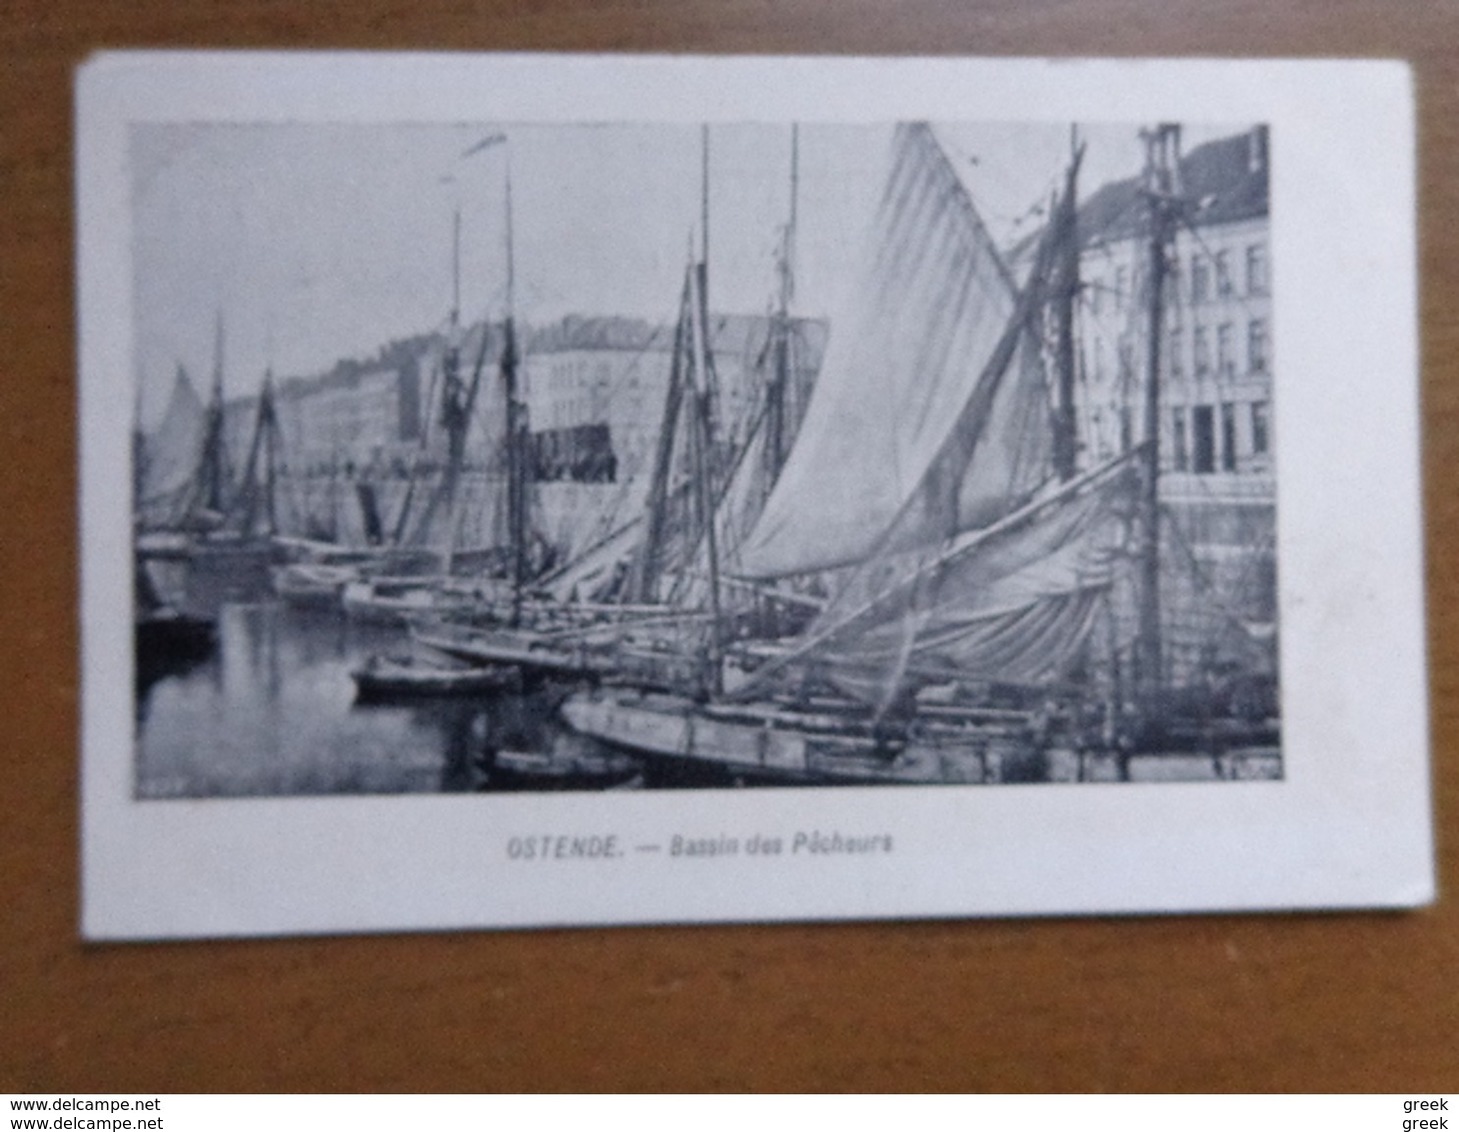 50 oude kaarten van België - Belgique (zie foto's van 48 kaarten) 001